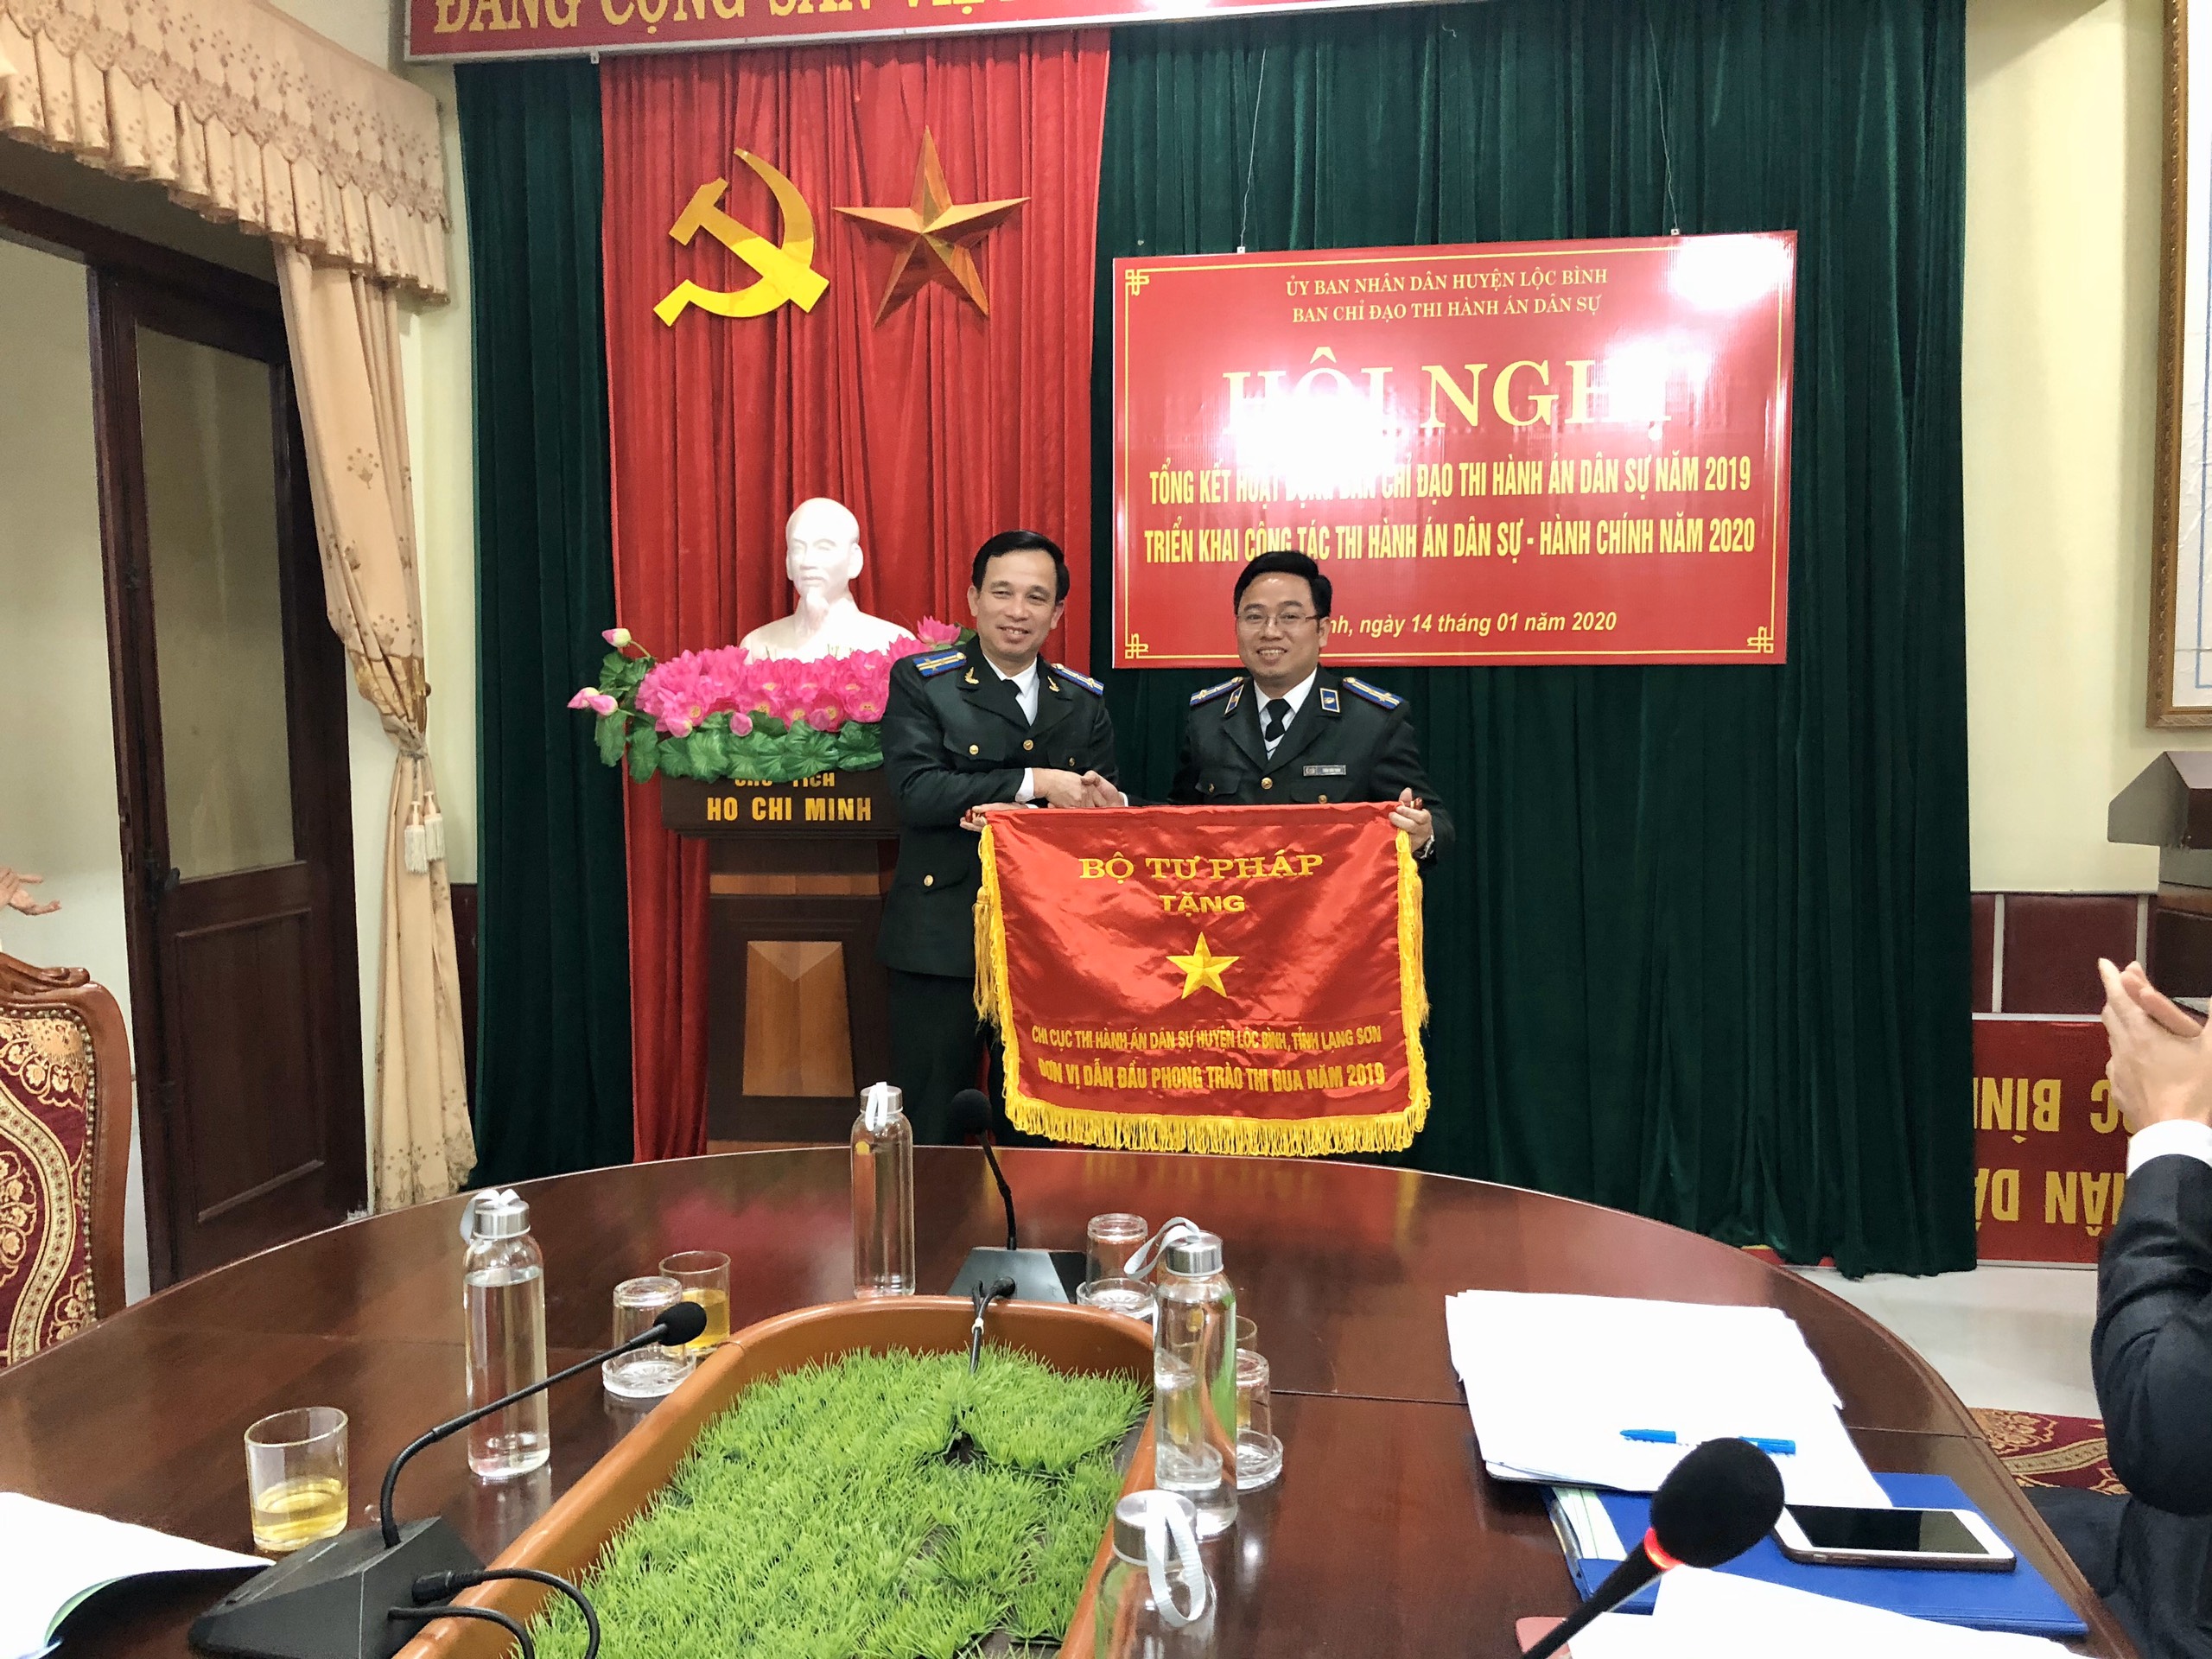 Ban chỉ đạo THADS huyện Lộc Bình tổ chức Hội nghị Tổng kết hoạt động của Ban chỉ đạo THADS tỉnh năm 2019 và triển khai công tác THADS, hành chính năm 2020